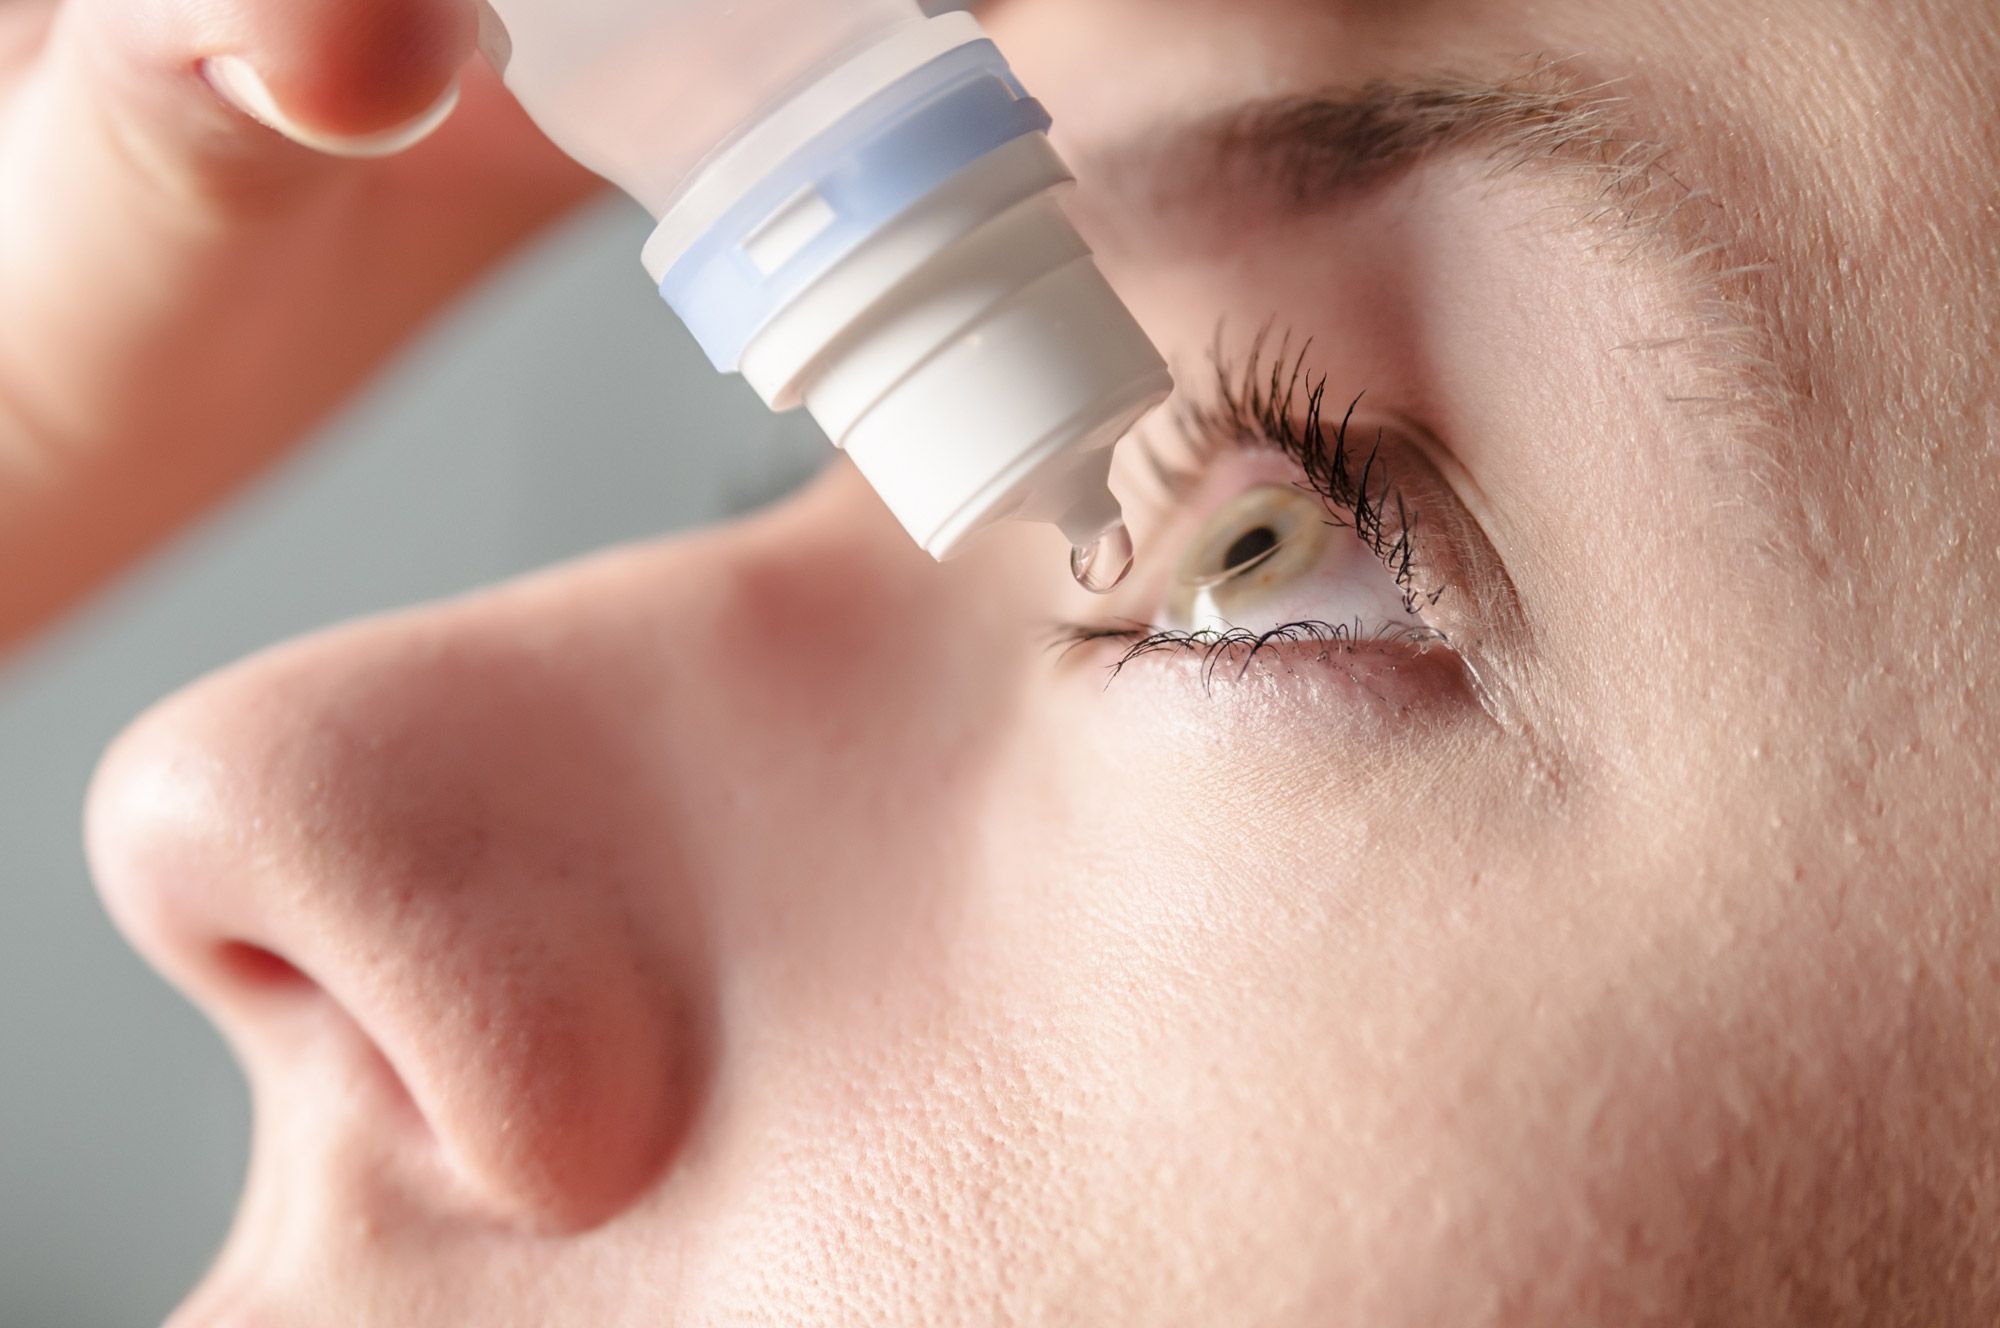 Thuốc kháng viêm nhỏ mắt steroid dùng khi nào, những nguy cơ khi lạm dụng?